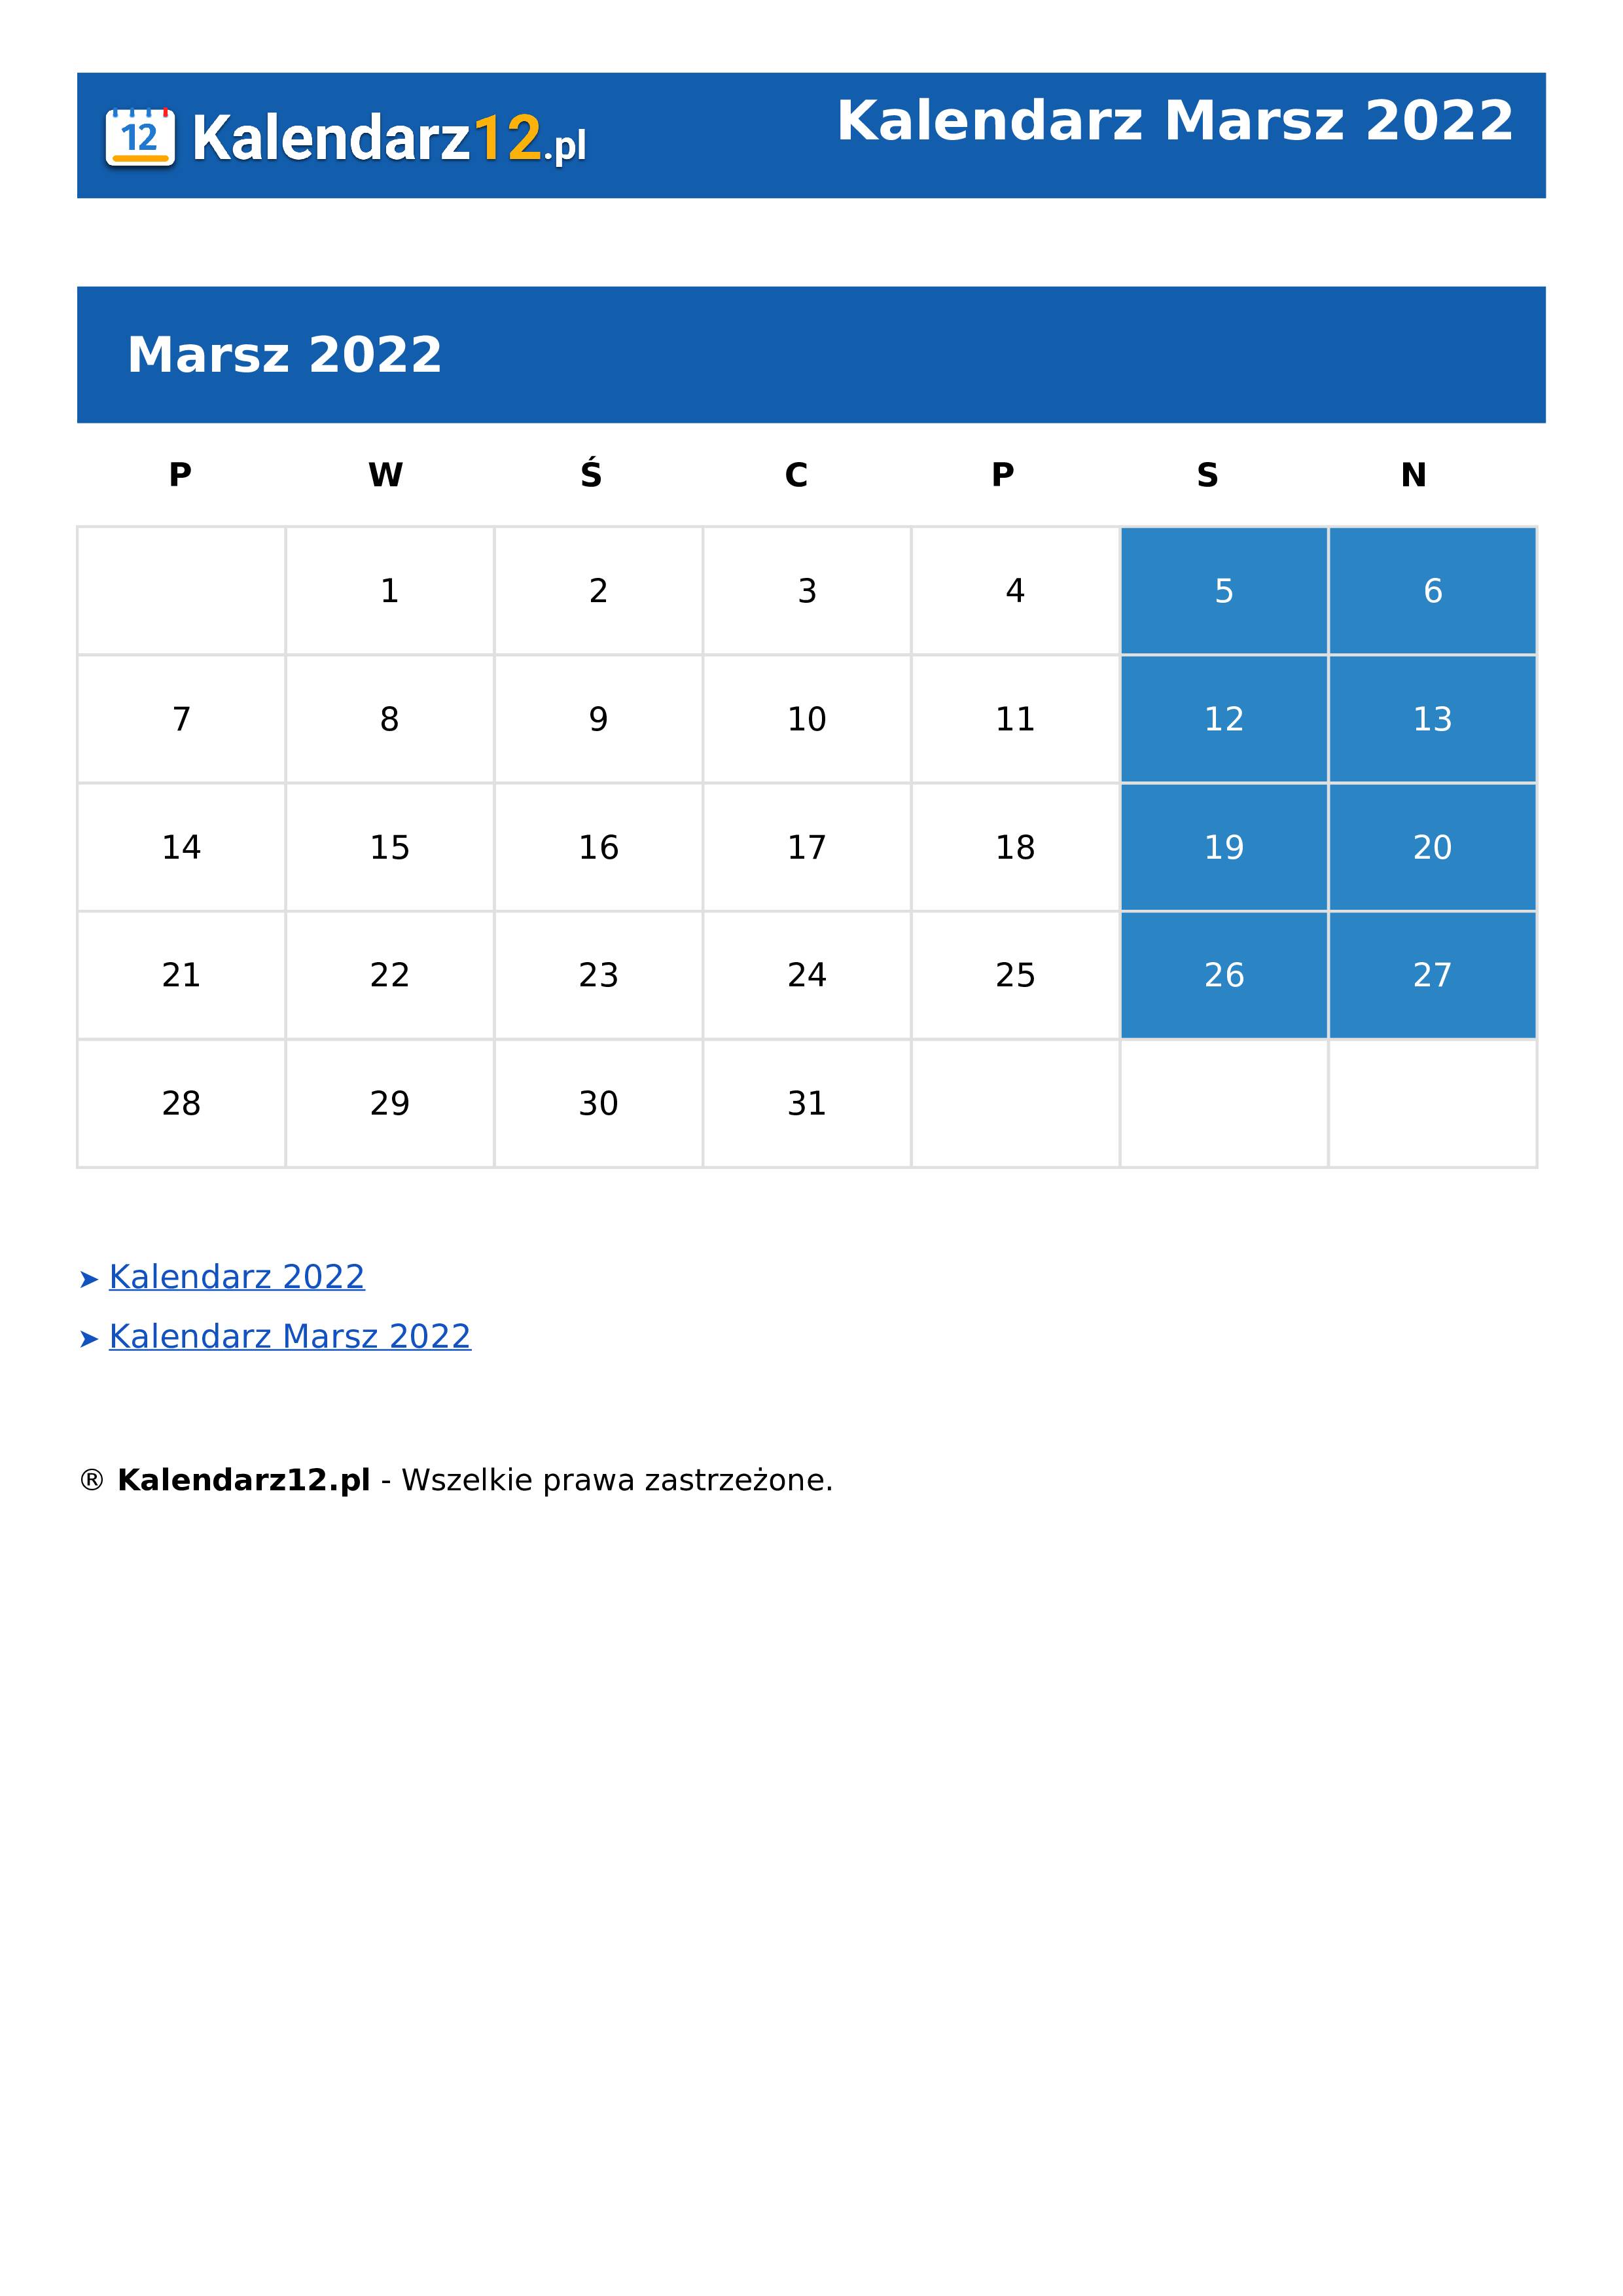 Calendar Marsz 2022